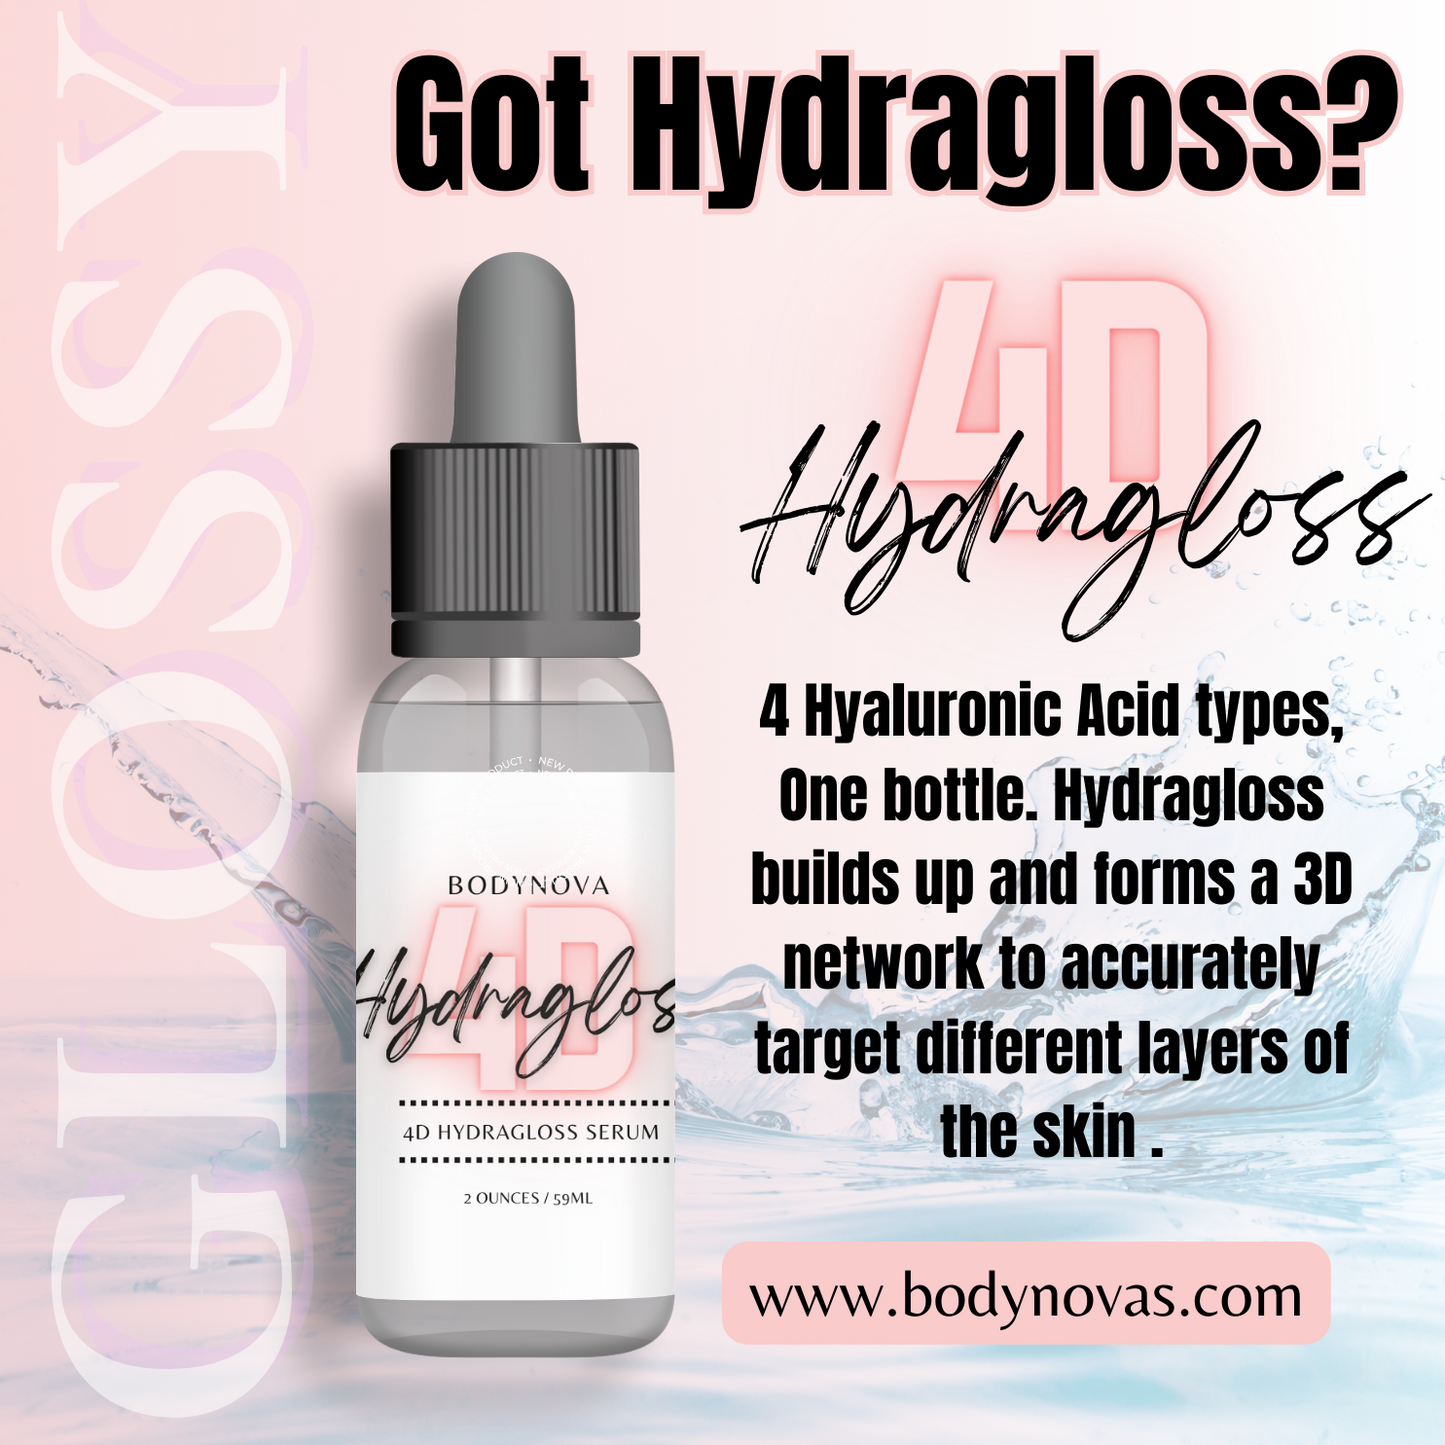 4D Hydragloss Serum